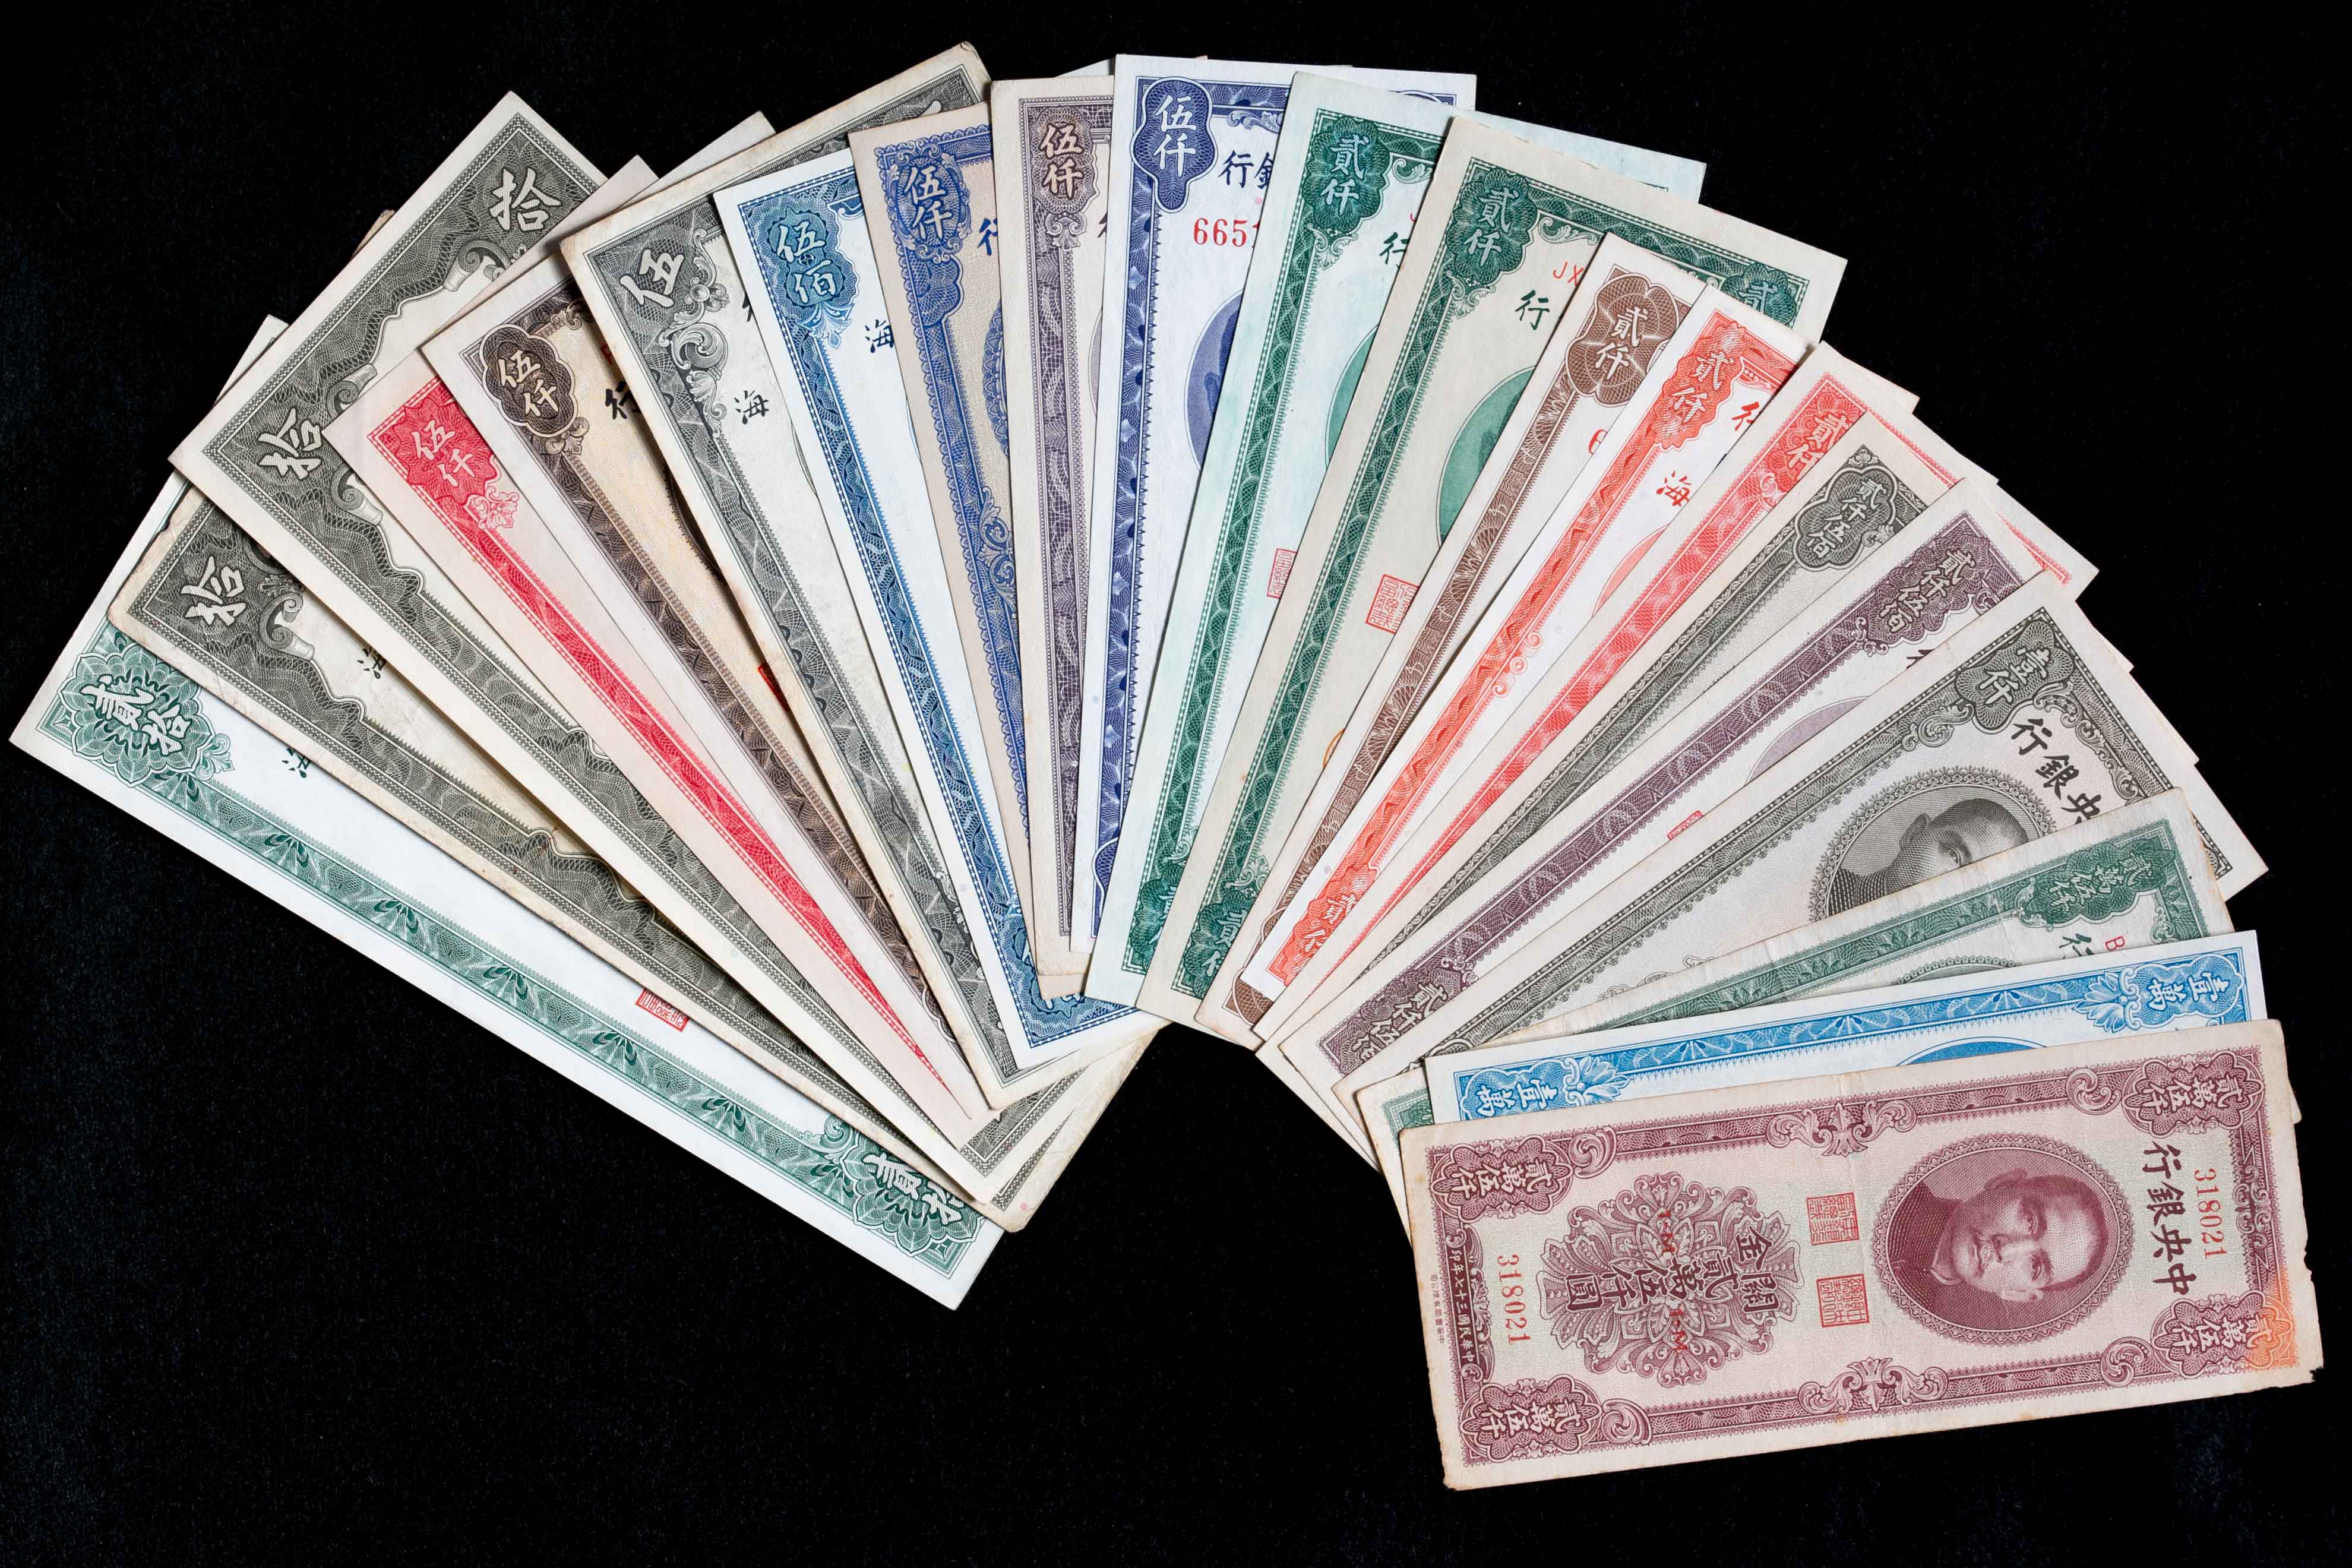 稀少品】レオナルドダヴィンチ没後500年祈念 モナリザ 欧州中央銀行0€紙幣-